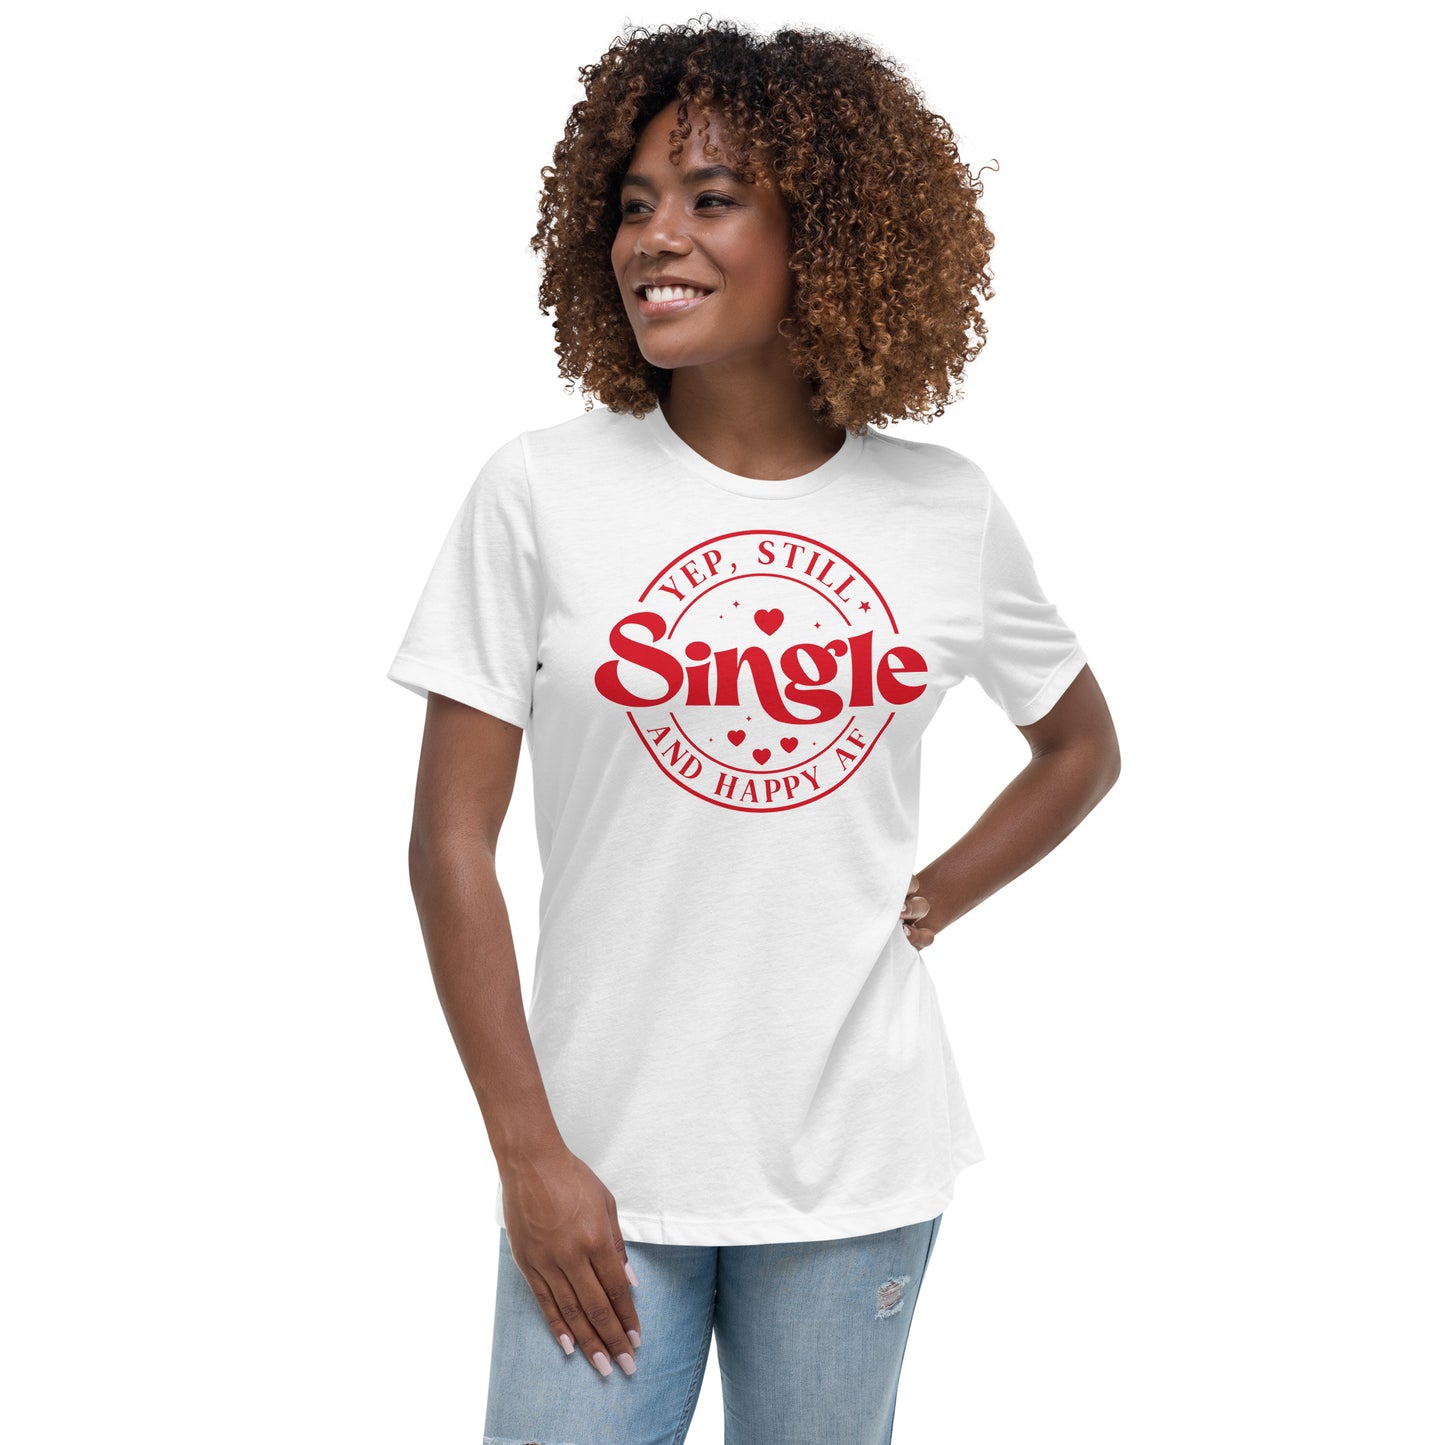 Still Single Women's Relaxed T-Shirt